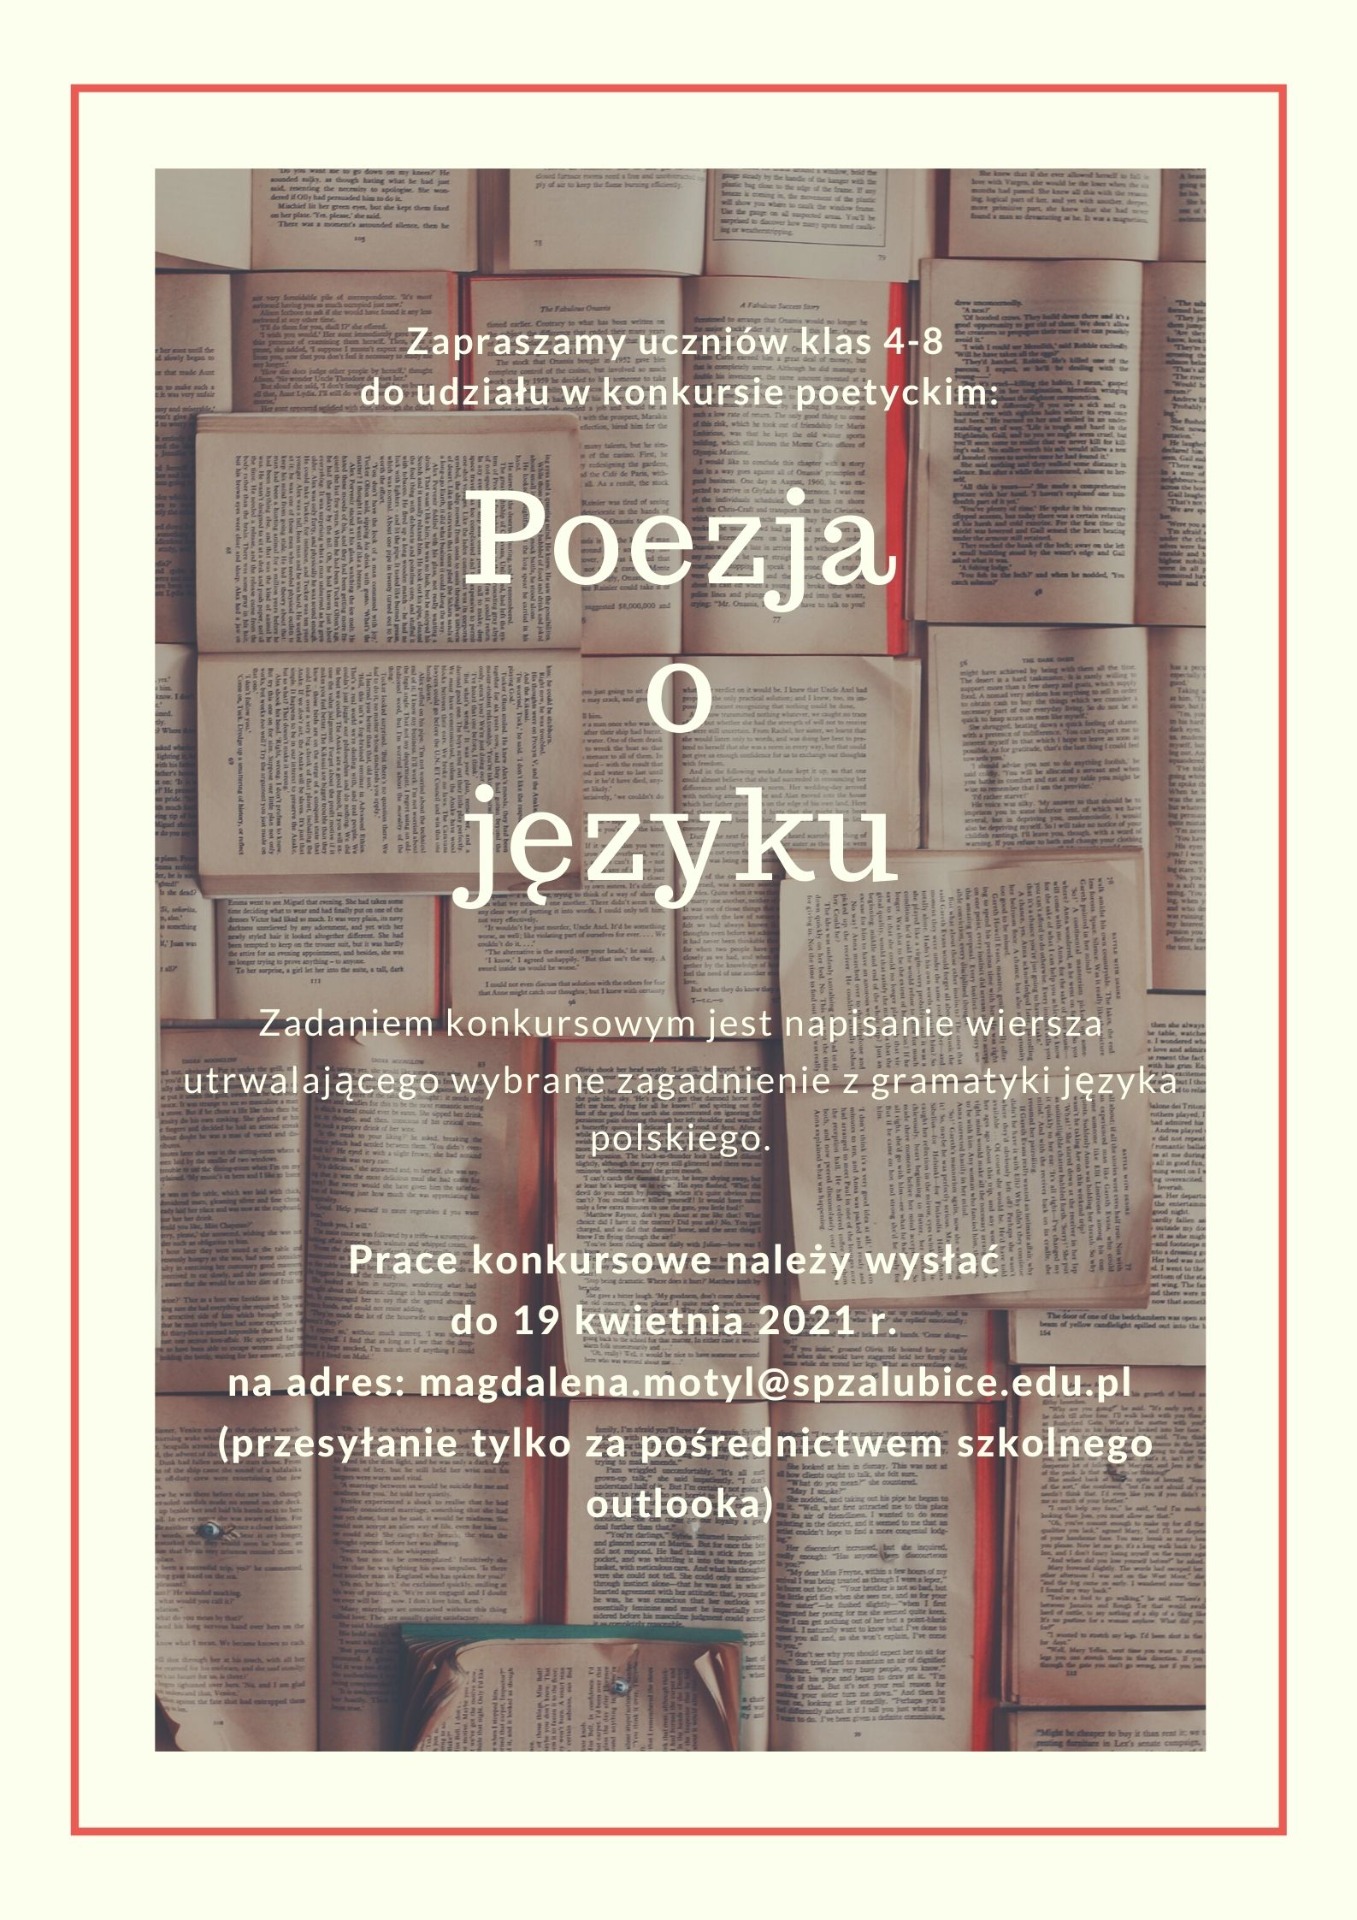 Konkurs polonistyczny "Poezja o języku" - Obrazek 1